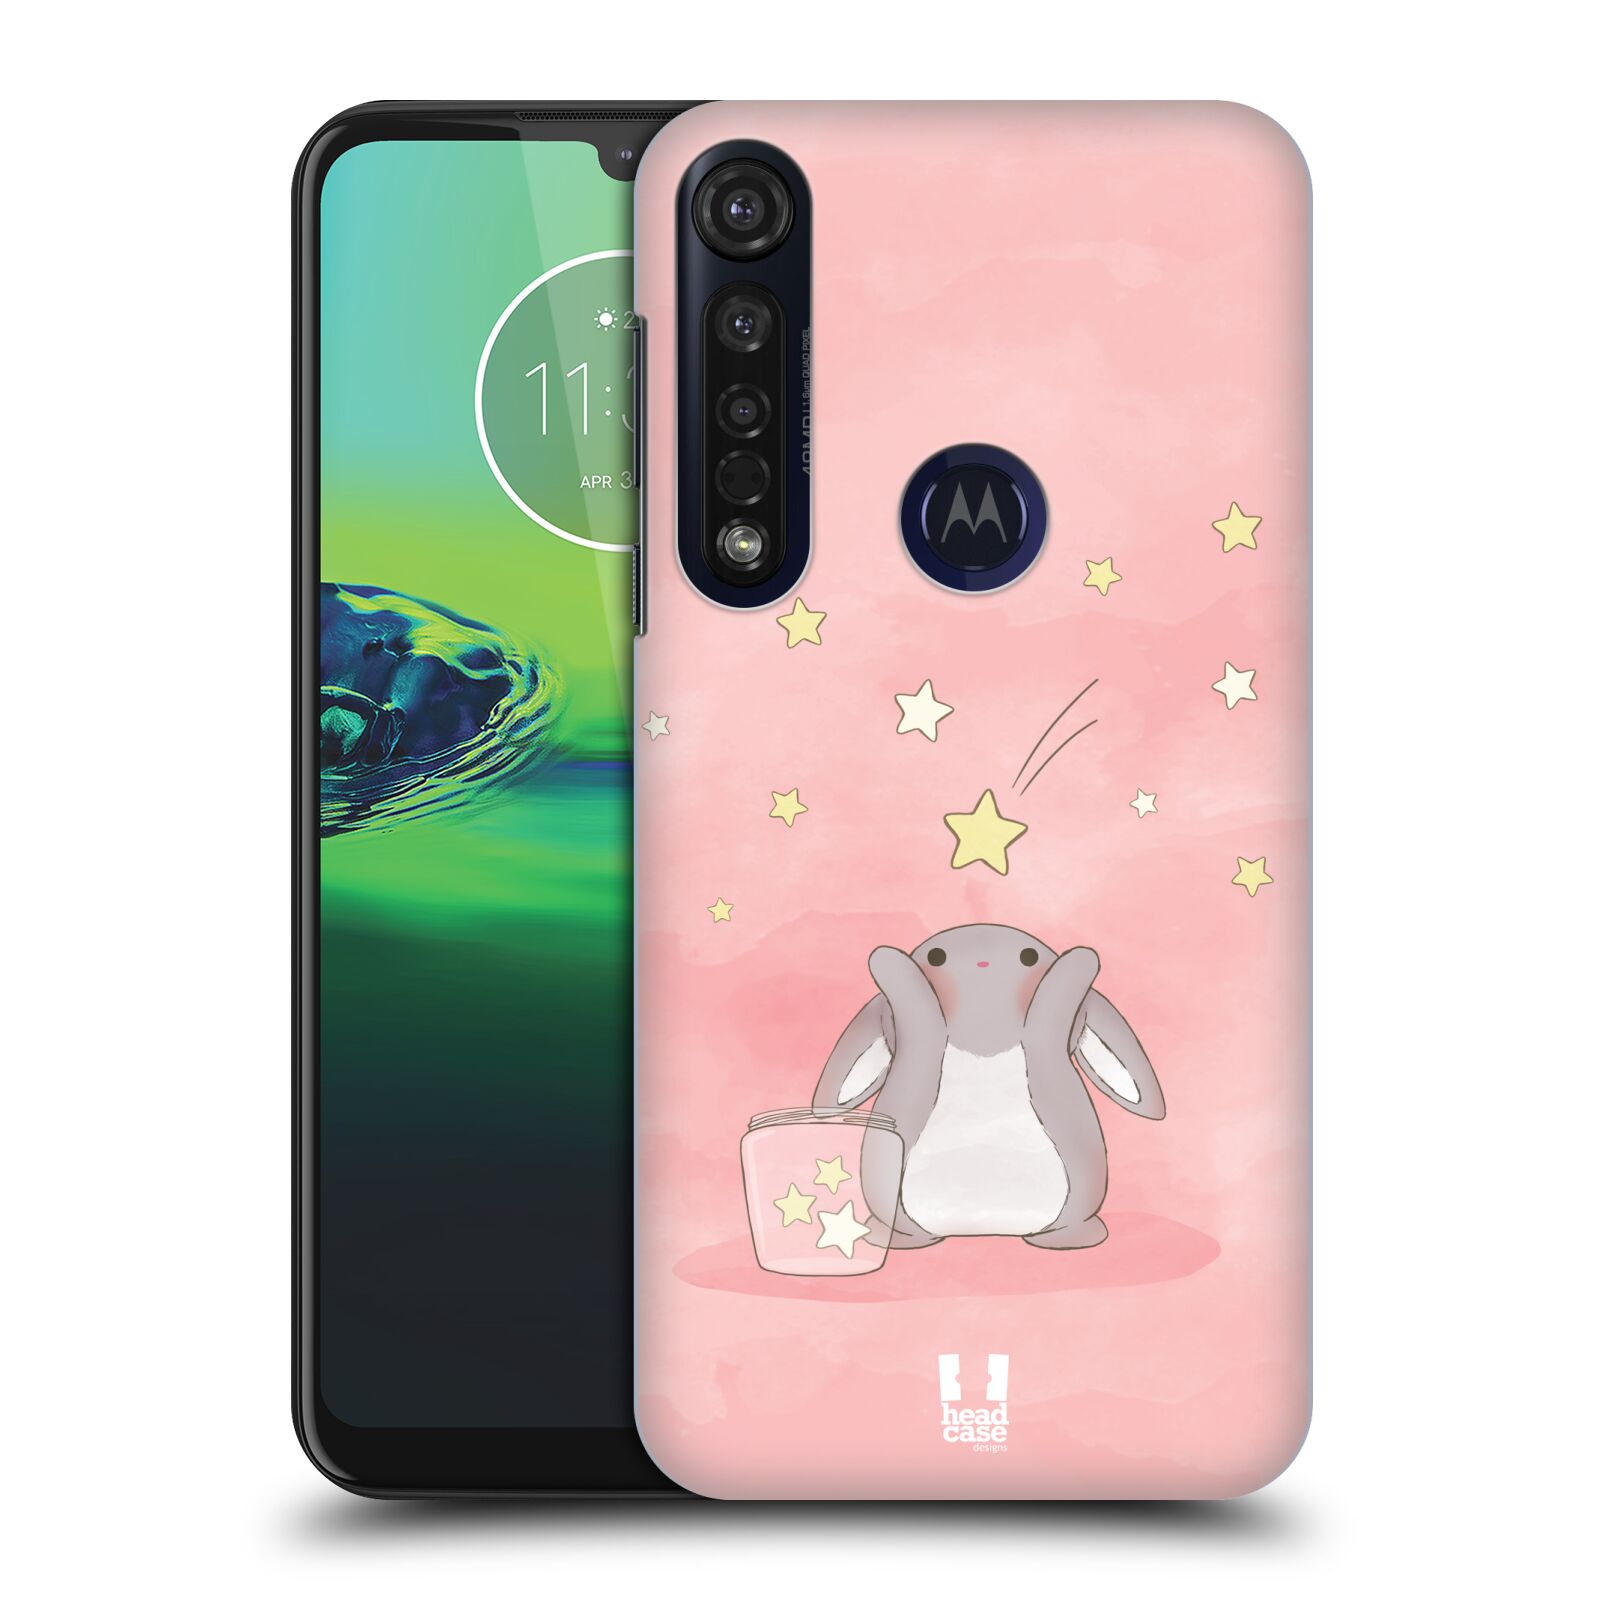 Pouzdro na mobil Motorola Moto G8 PLUS - HEAD CASE - vzor králíček a hvězdy růžová